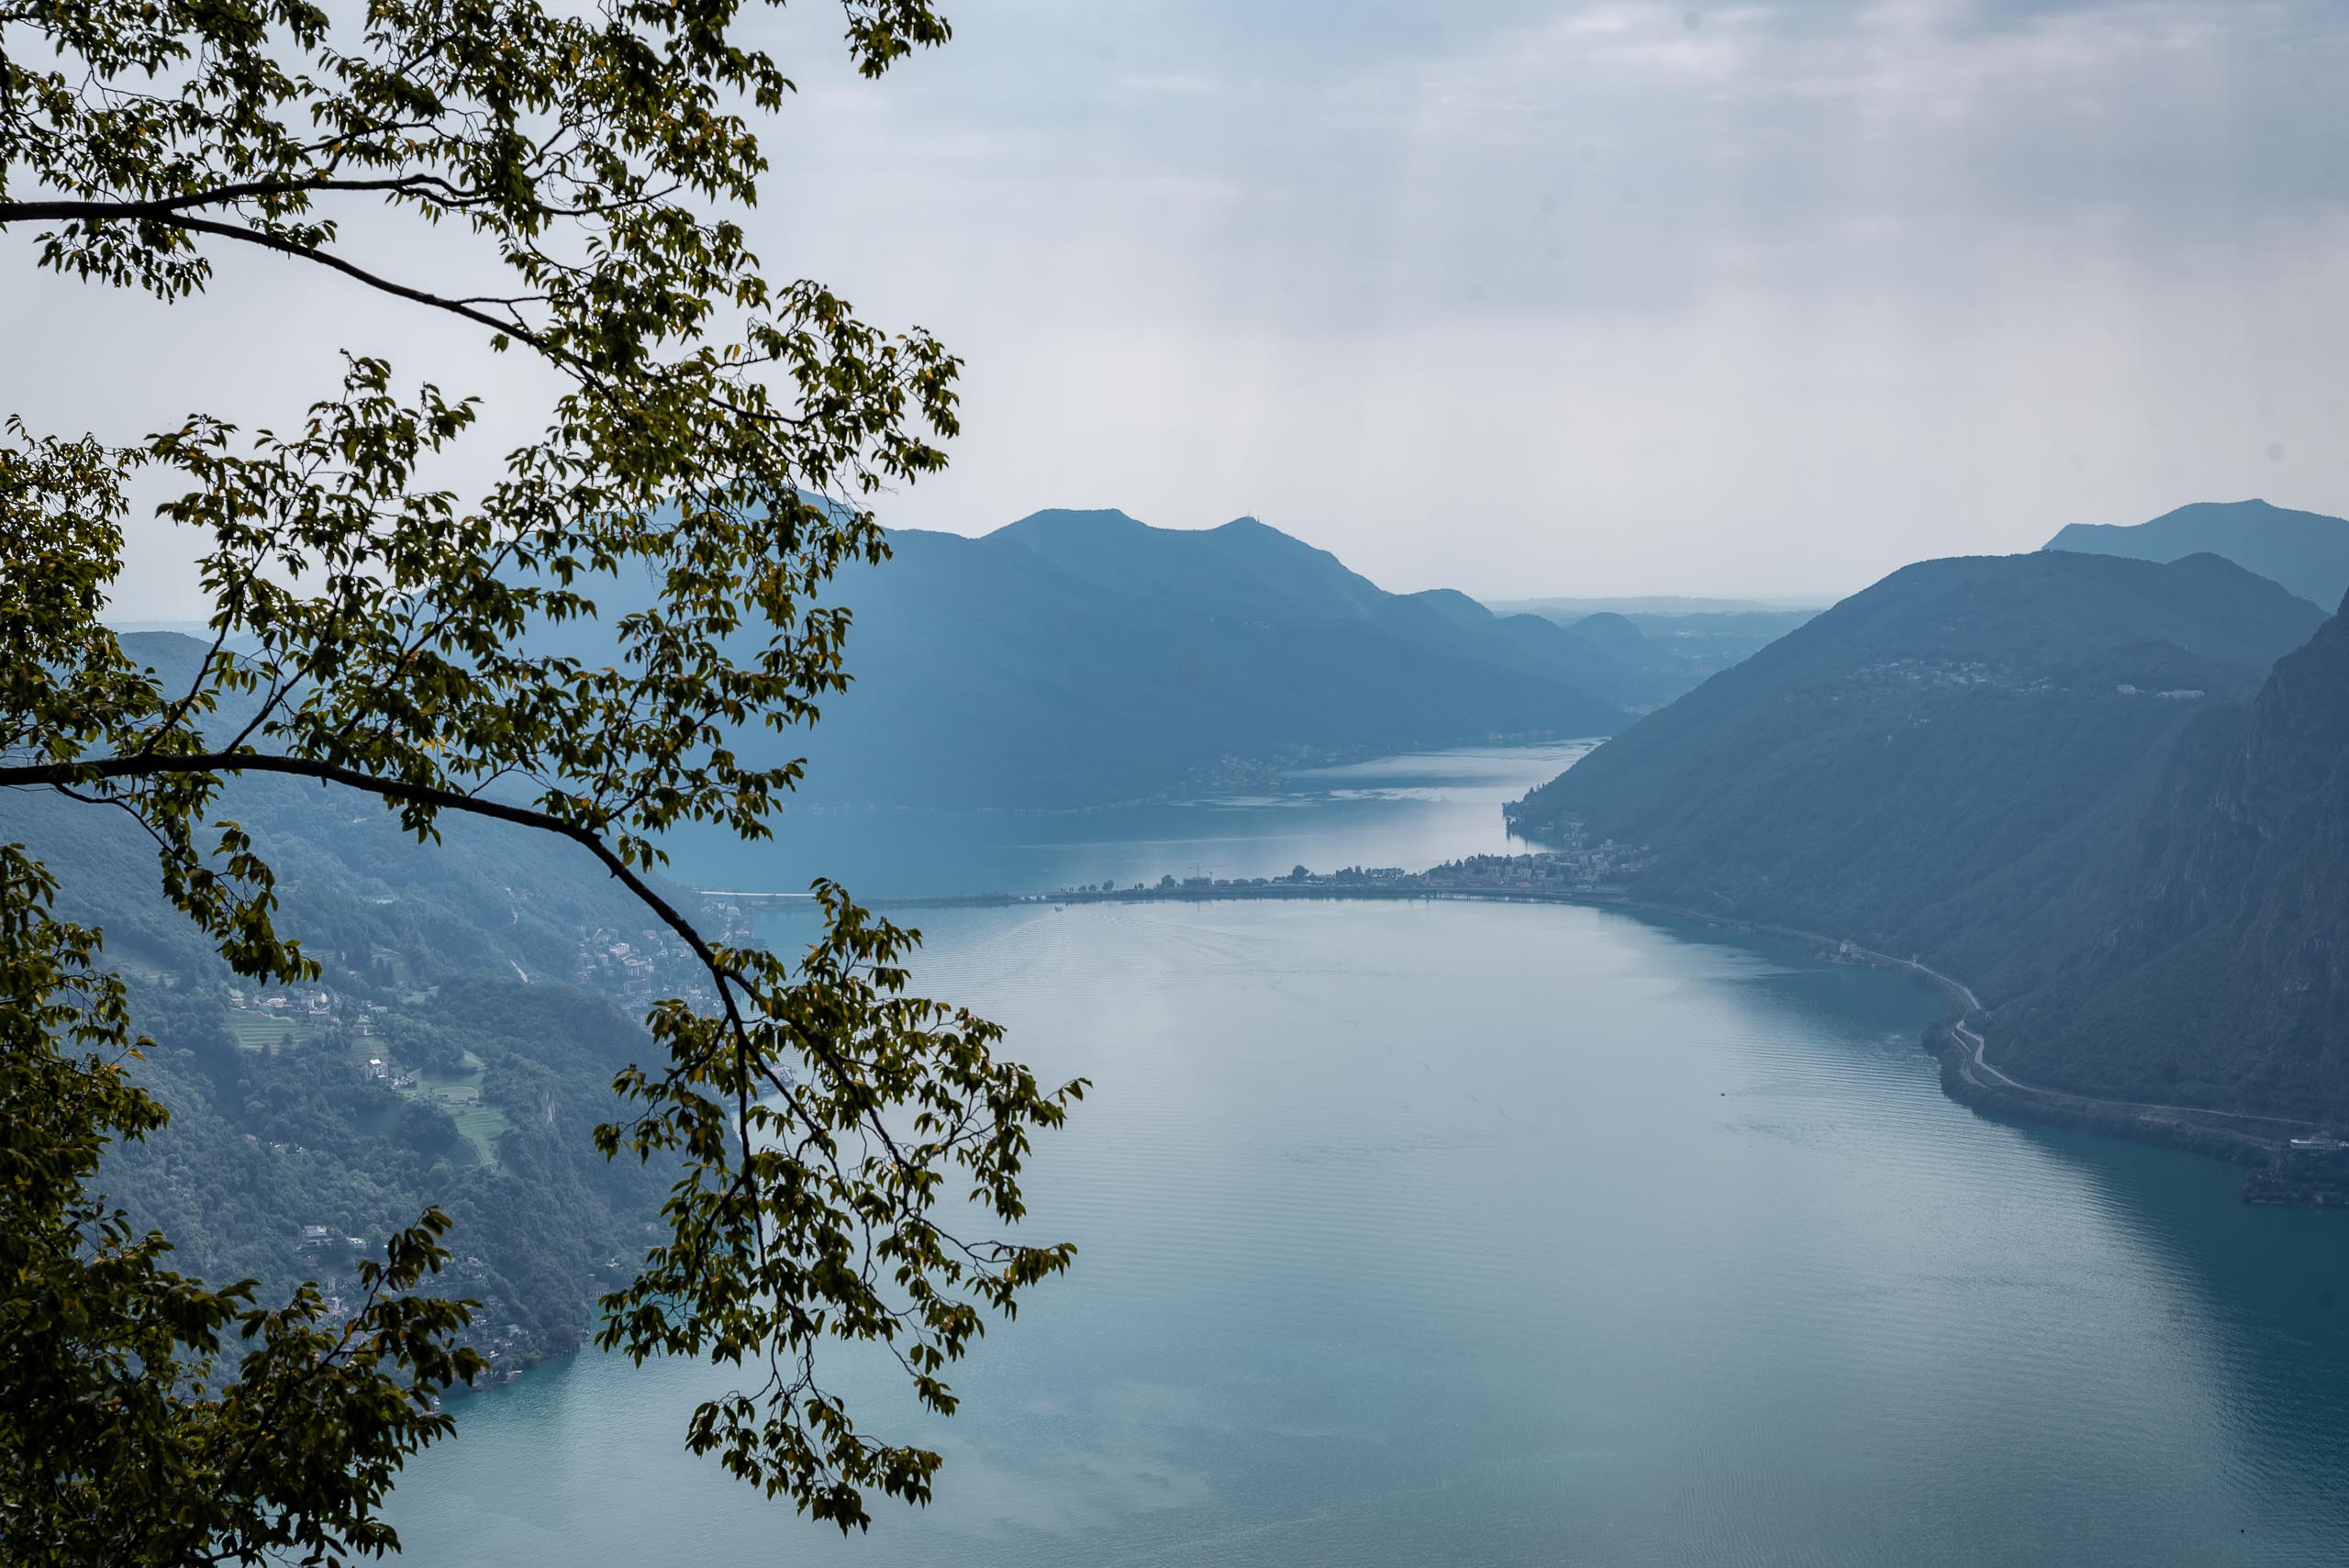 Monte Brè - widok na Lago di Lugano